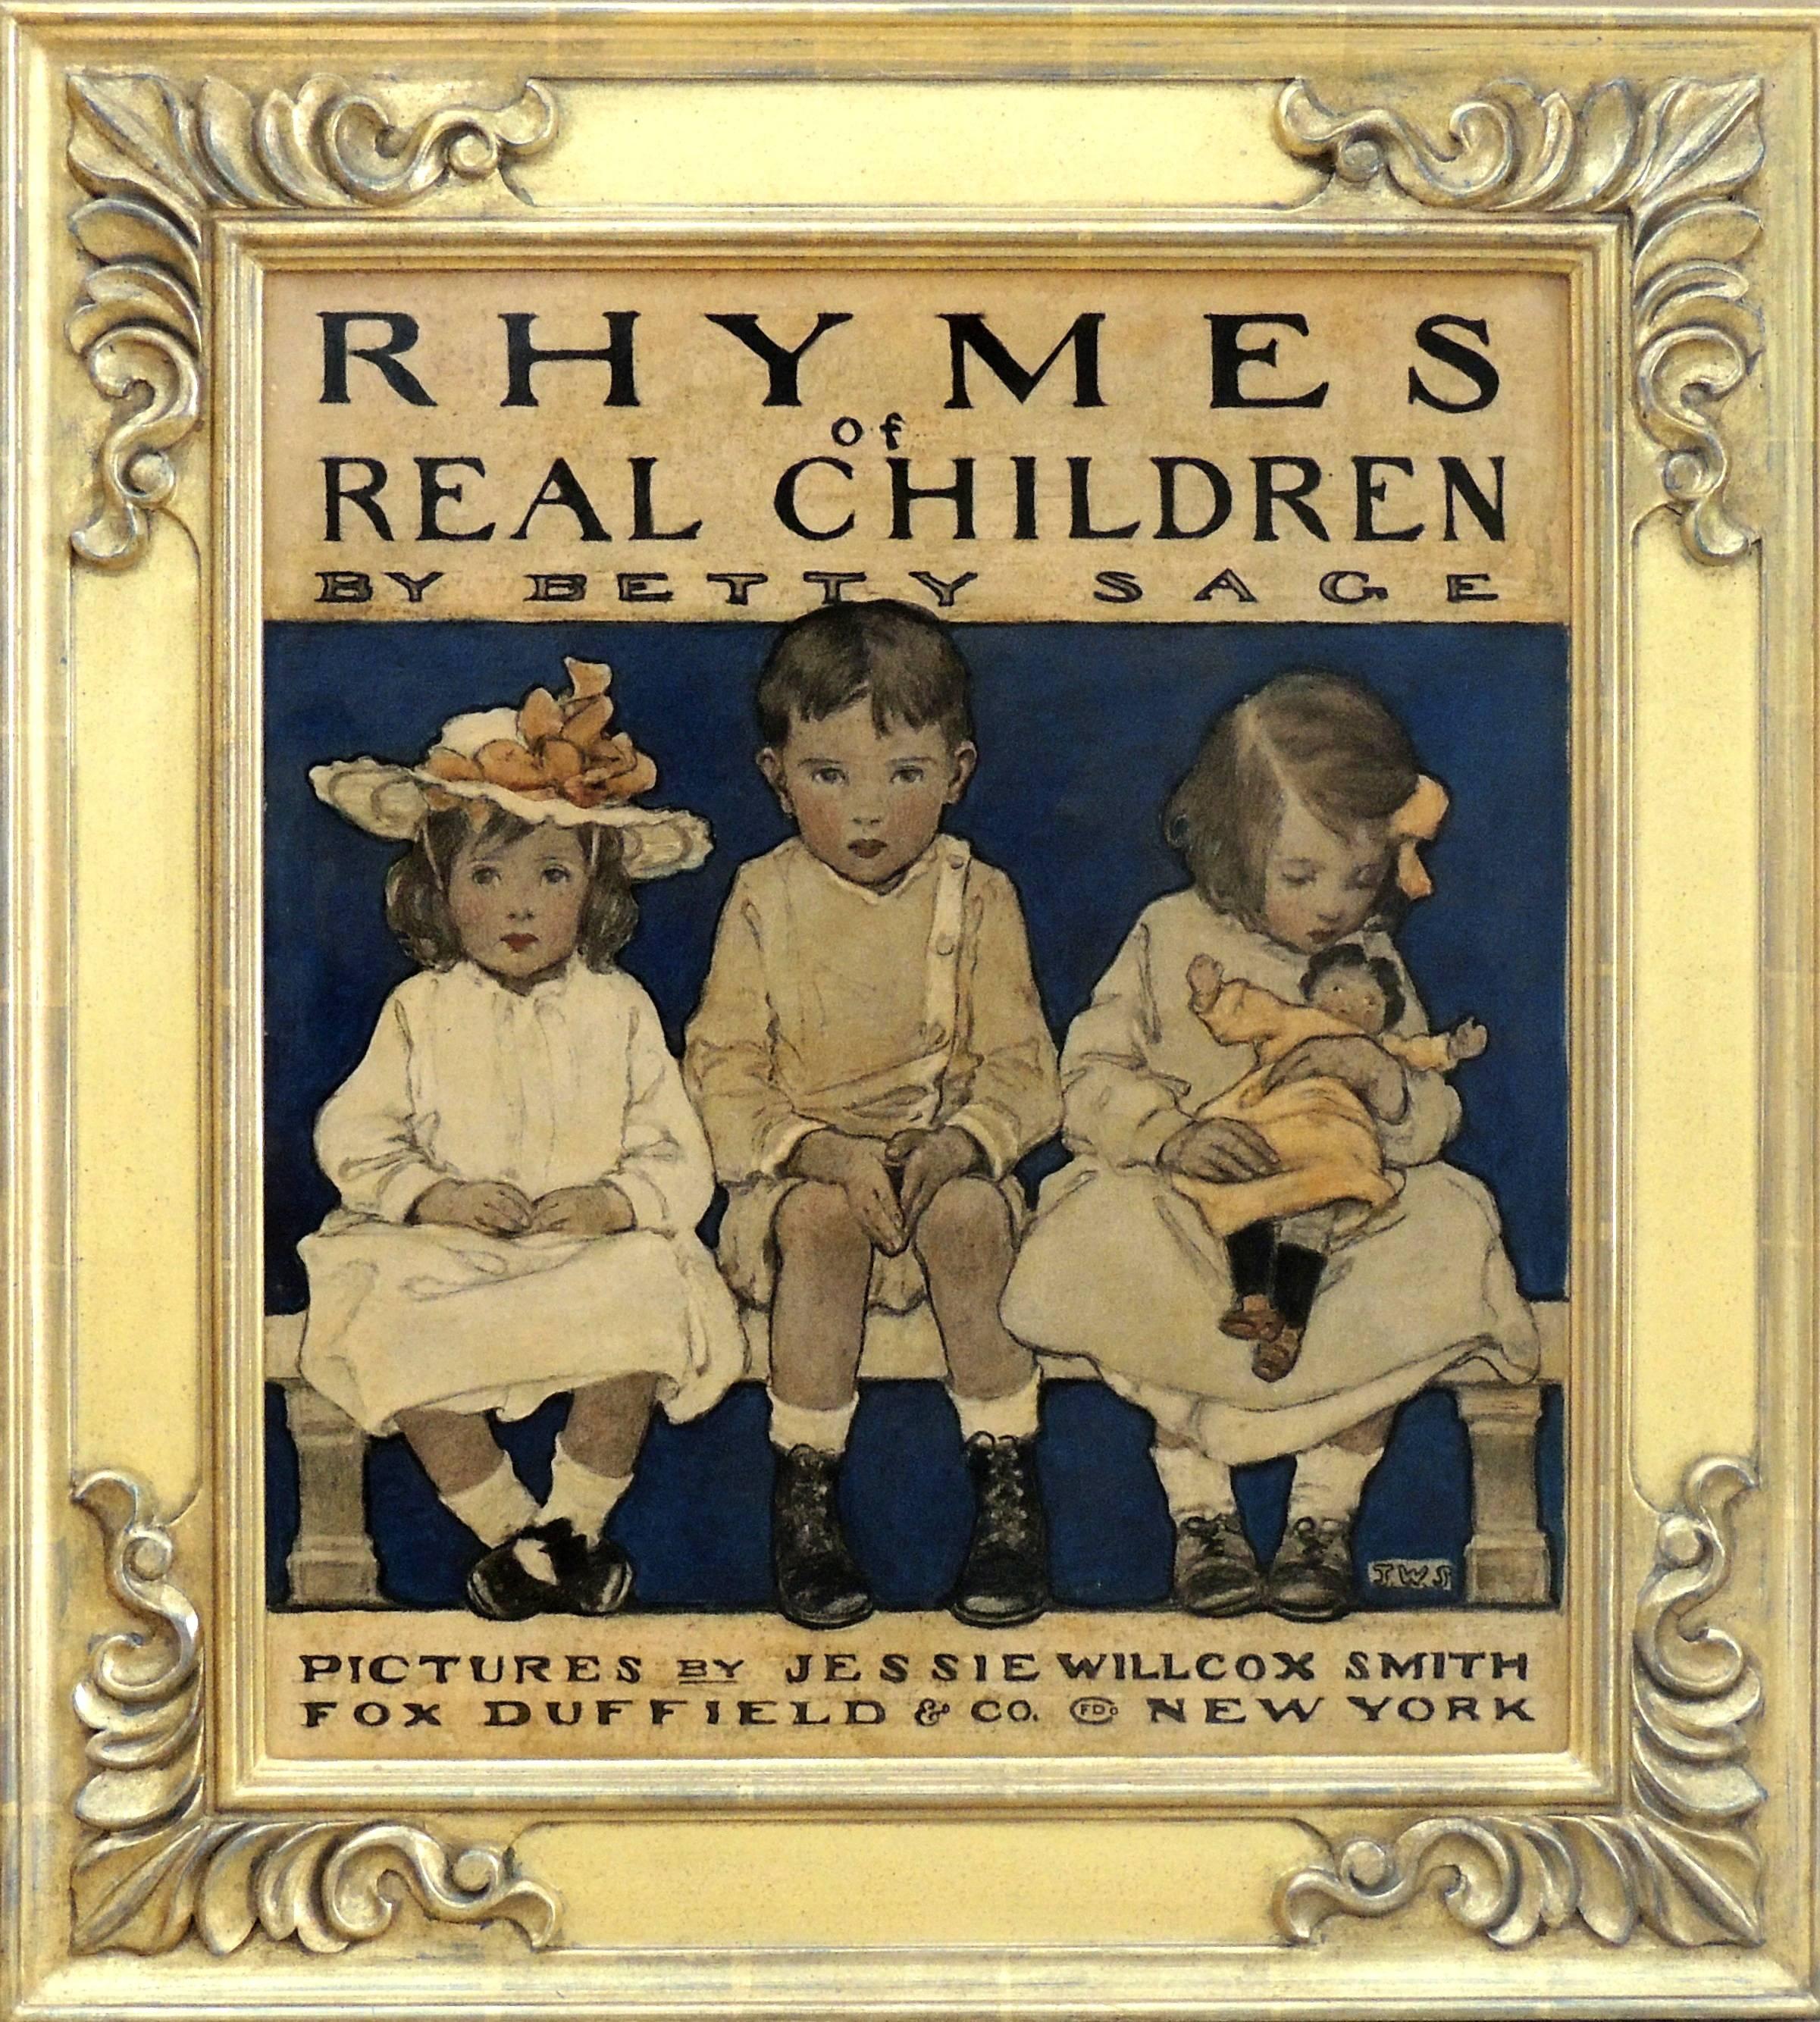 Rhymes von echten Kindern – Art von Jessie Willcox Smith